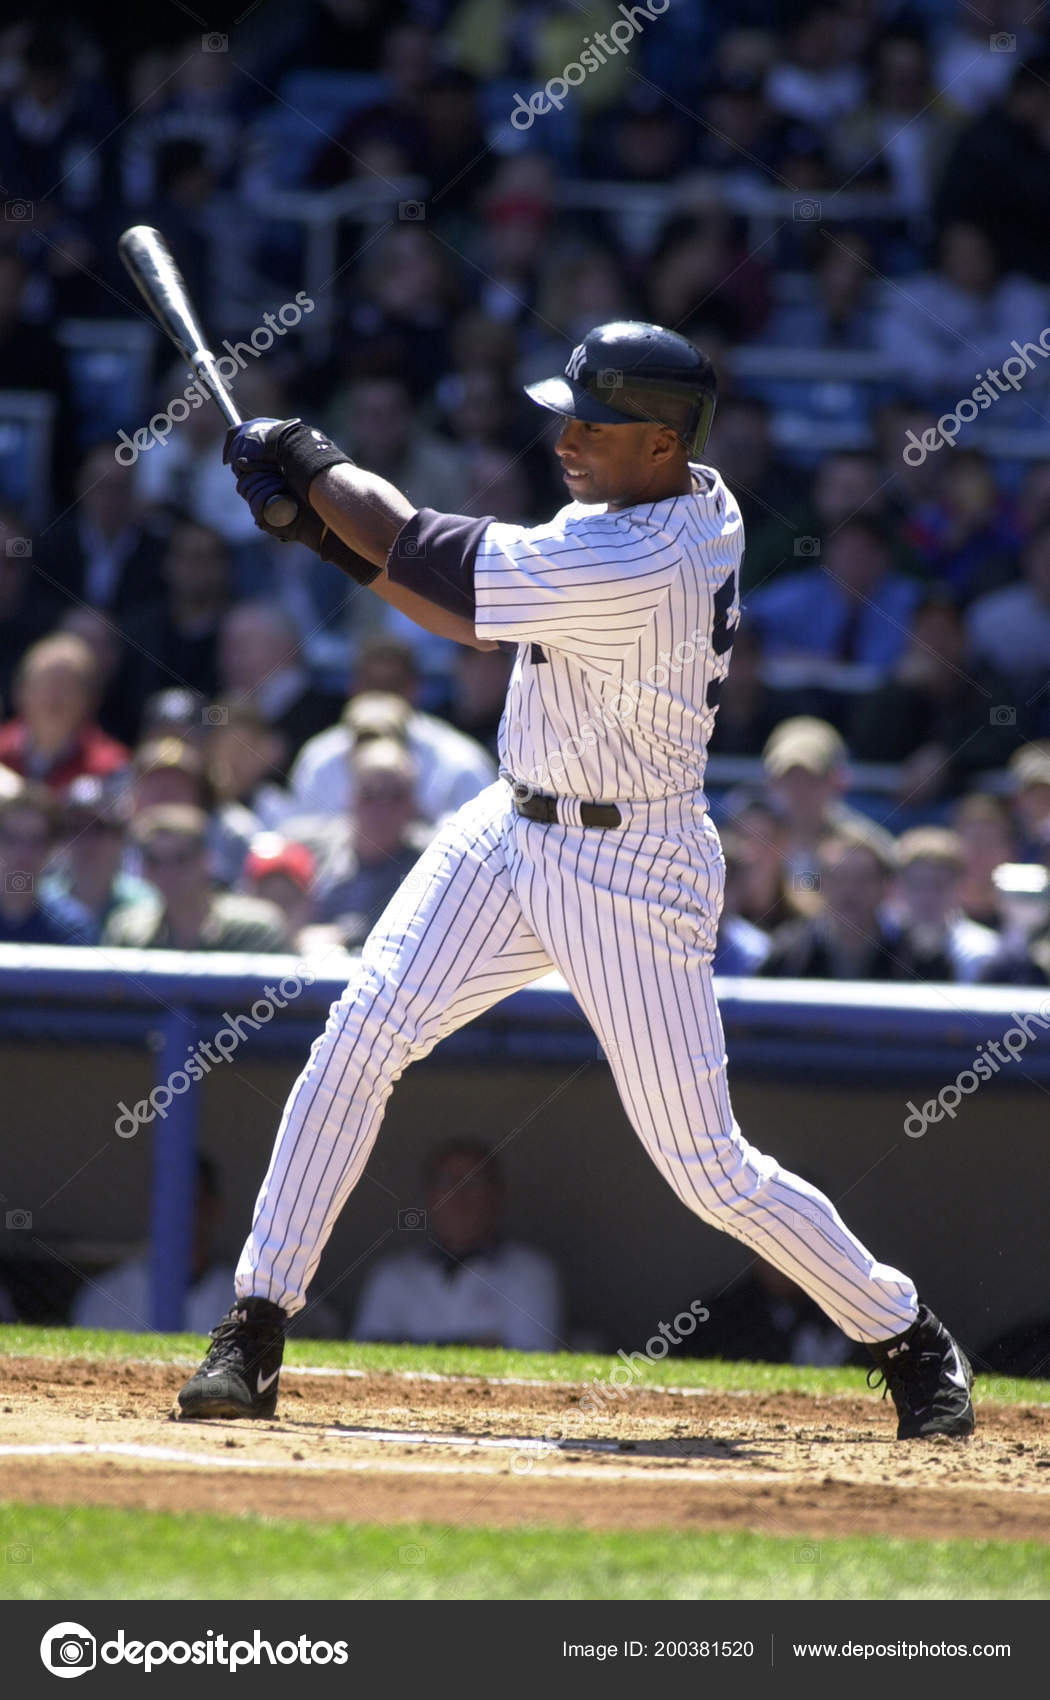 Bernie Williams Outfielfieldspieler Für Die New York Yankees Spiel Action — Redaktionelles Stockfoto © ProShooter #200381520